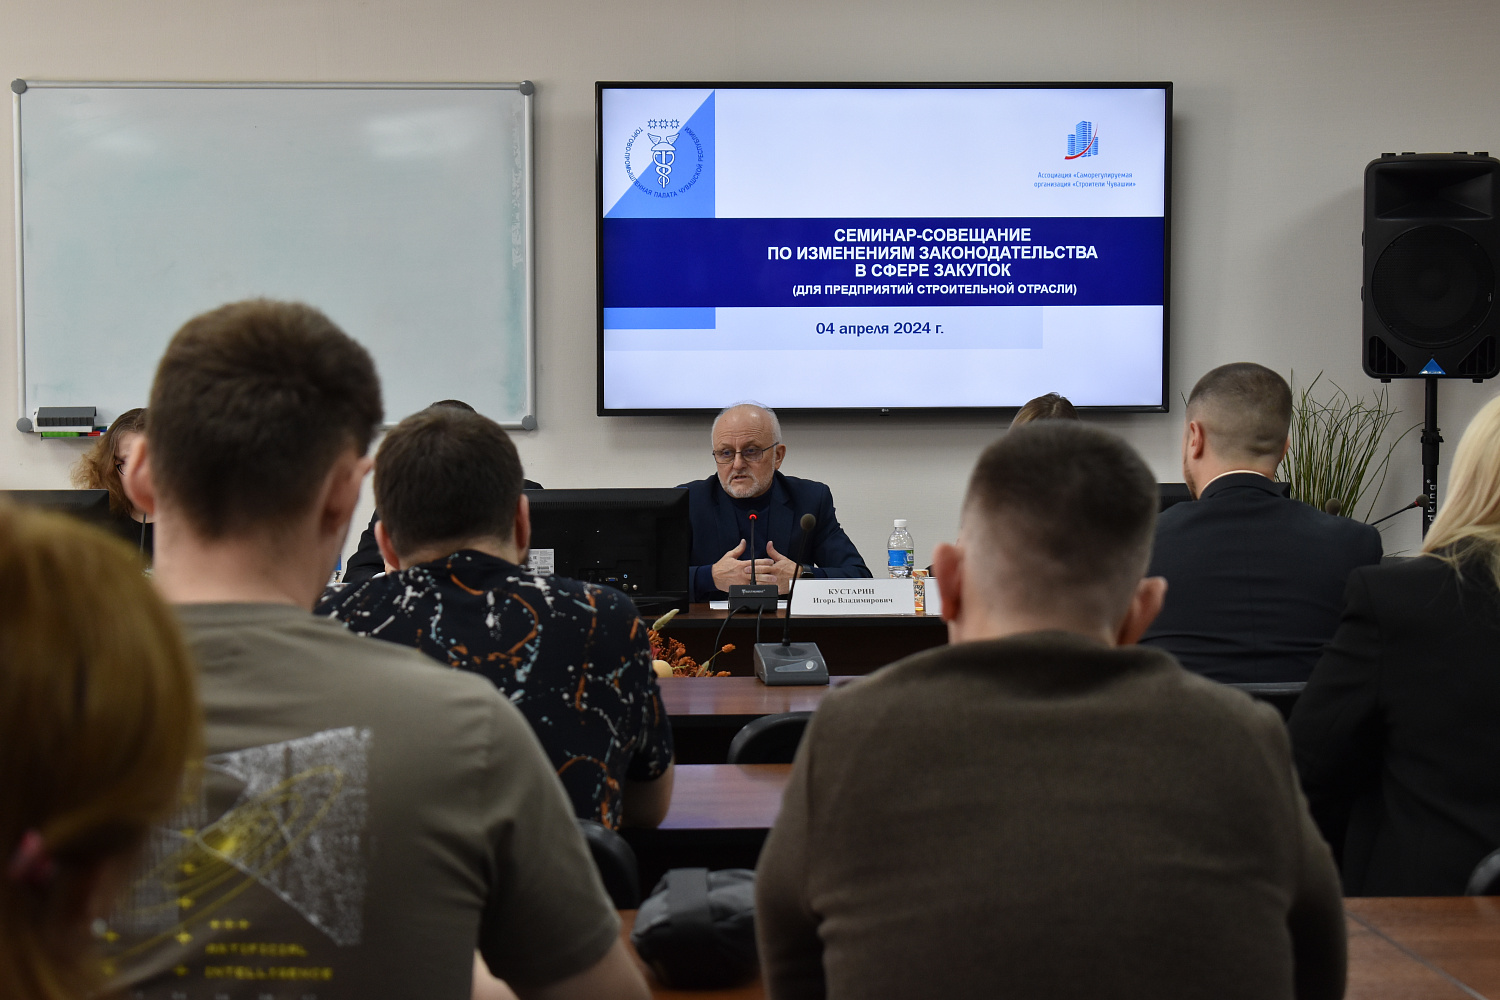 4 апреля 2024 г. в ТПП Чувашской Республики состоялся семинар-совещание по изменениям законодательства в сфере закупок для предприятий строительной отрасли